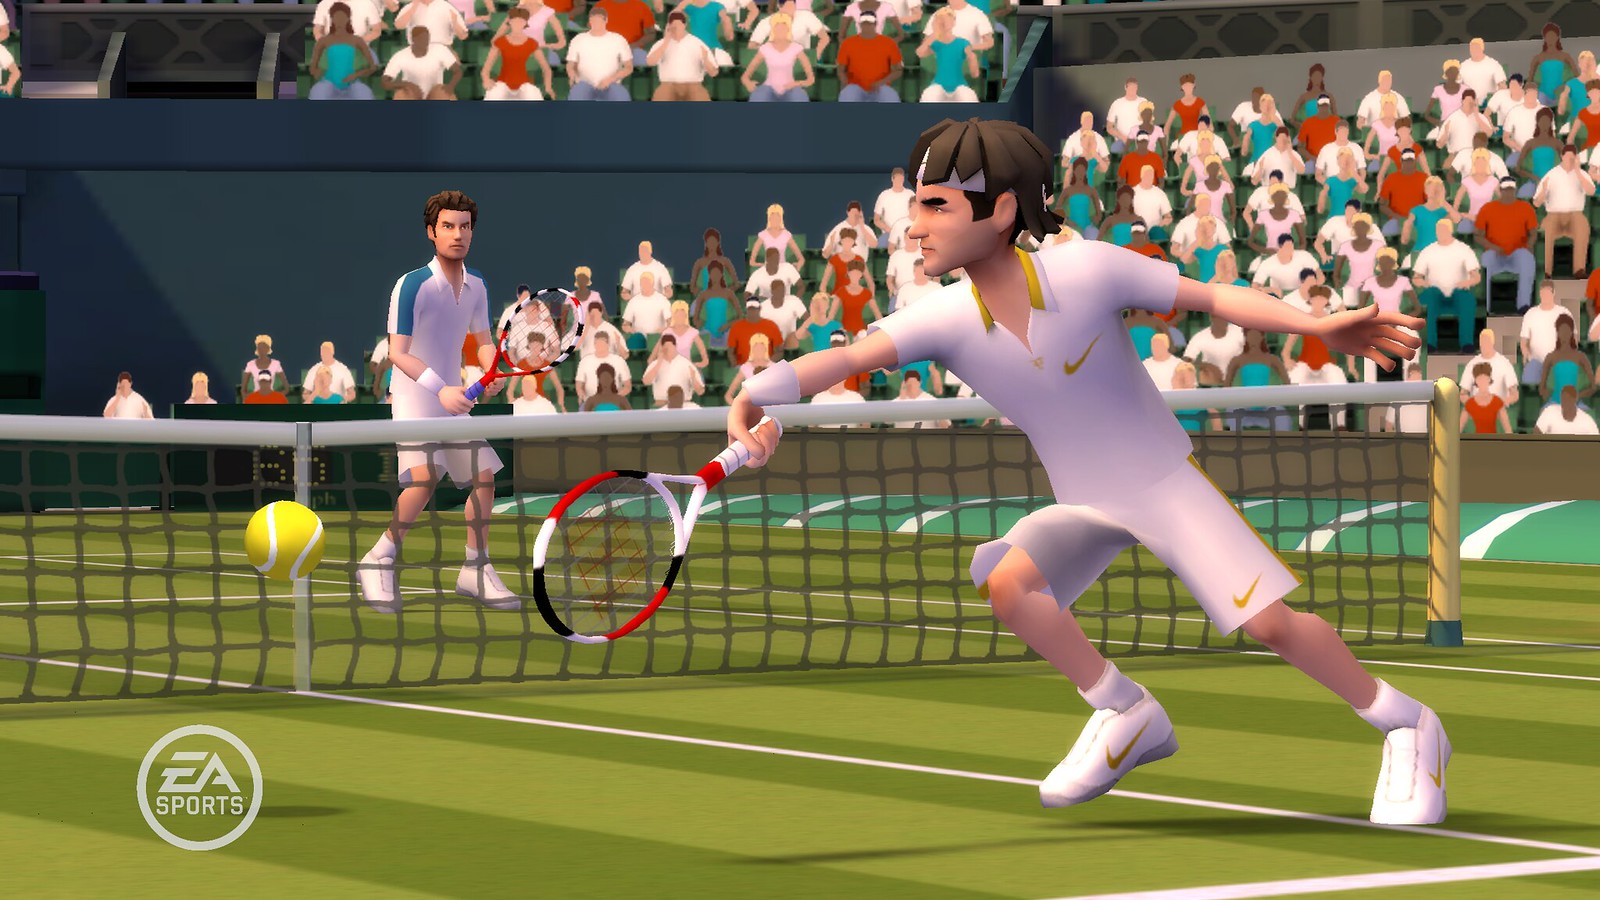 Уроки игры тенниса. Игра в теннис. Гранд-слэм теннис. Wii Tennis. EA Sports Grand Slam Tennis.